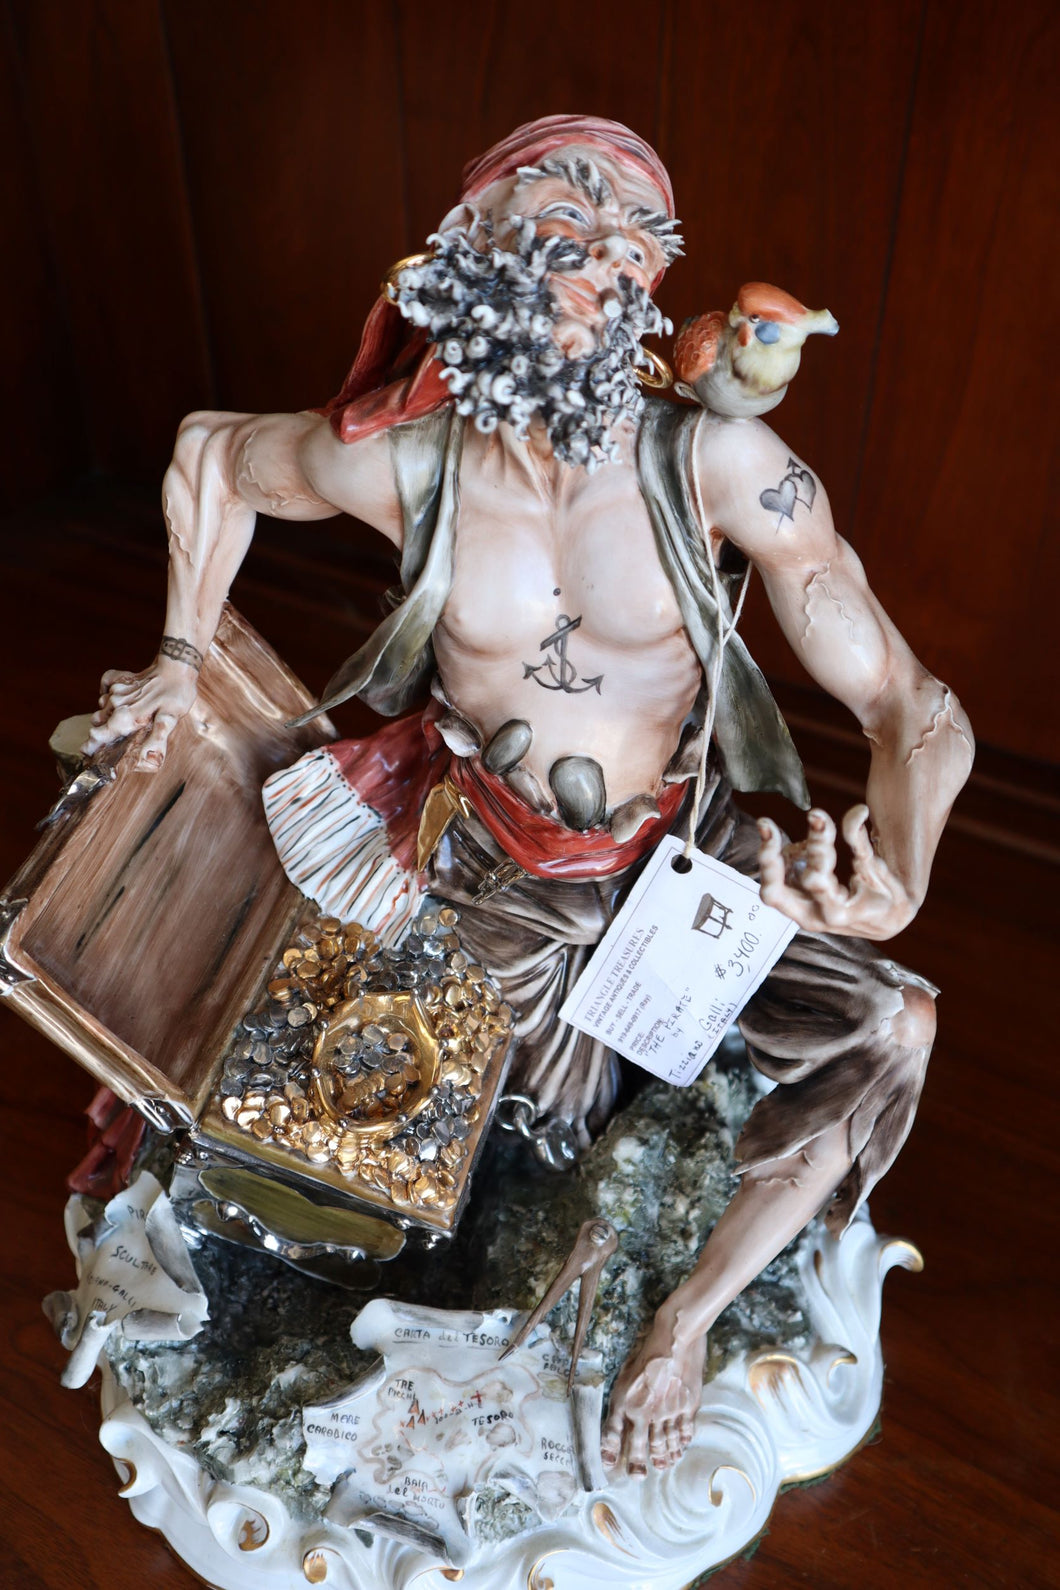 Pirate Sculpture by Tiziano Galli - Italian